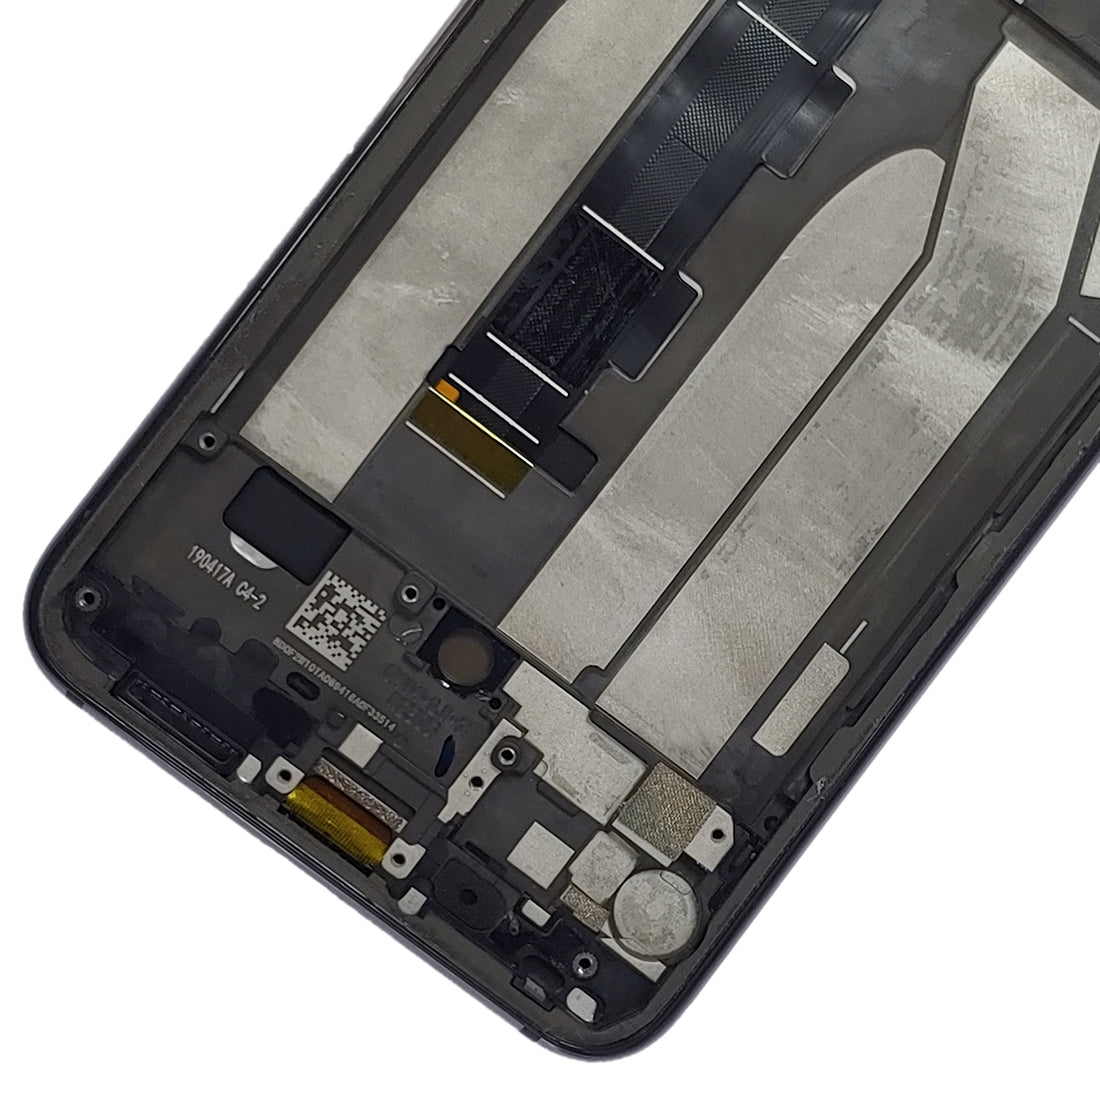 Pantalla Completa LCD + Tactil + Marco Xiaomi MI 9 SE Negro